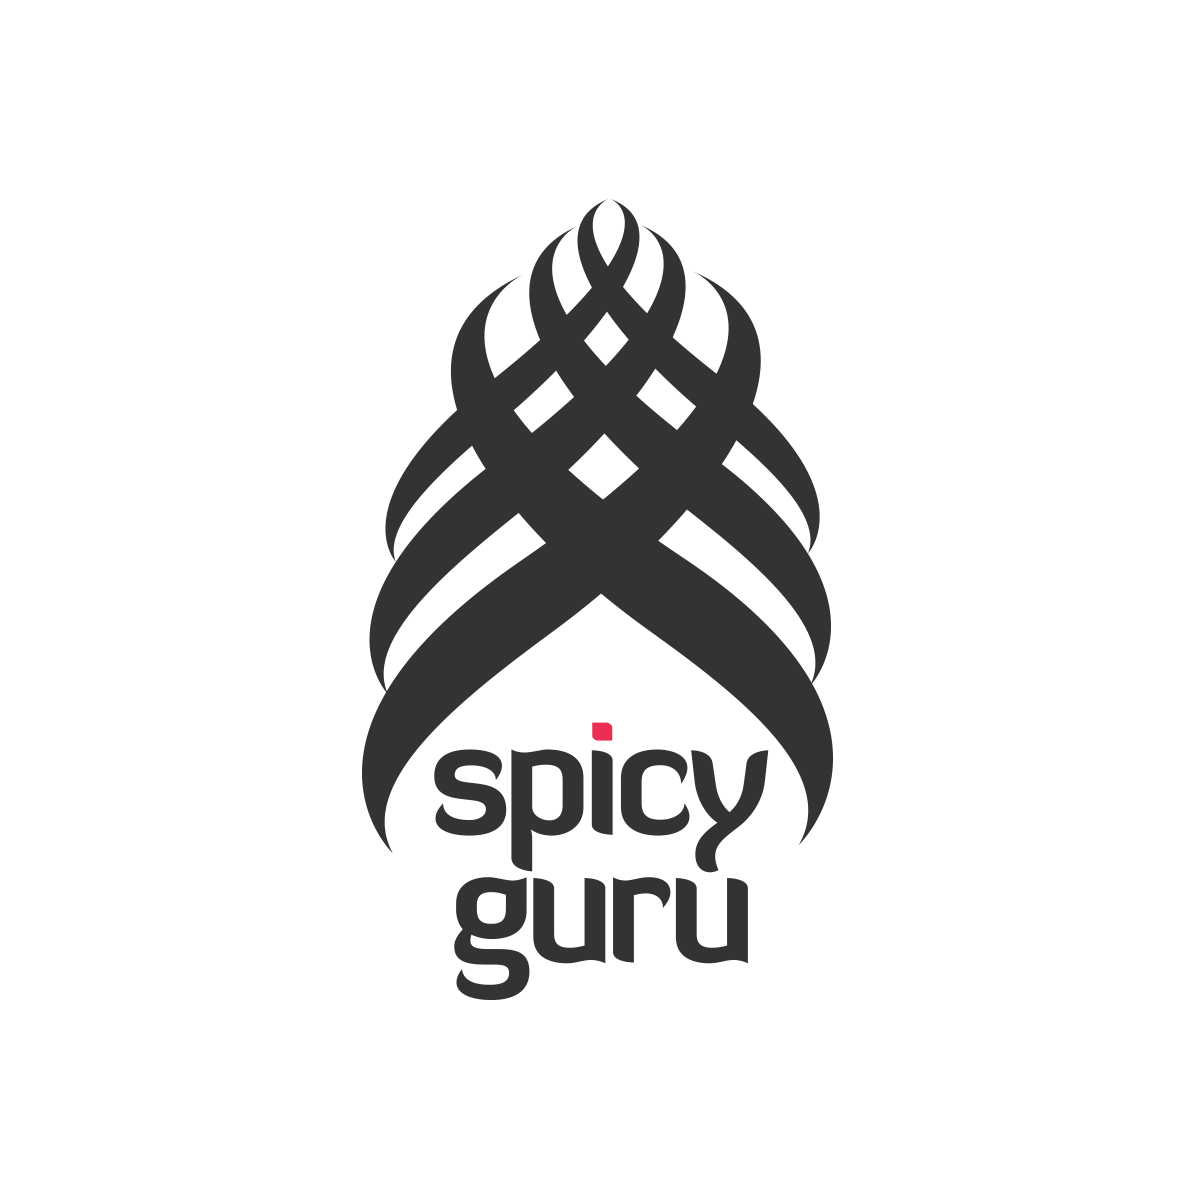 Spicy Guru logo